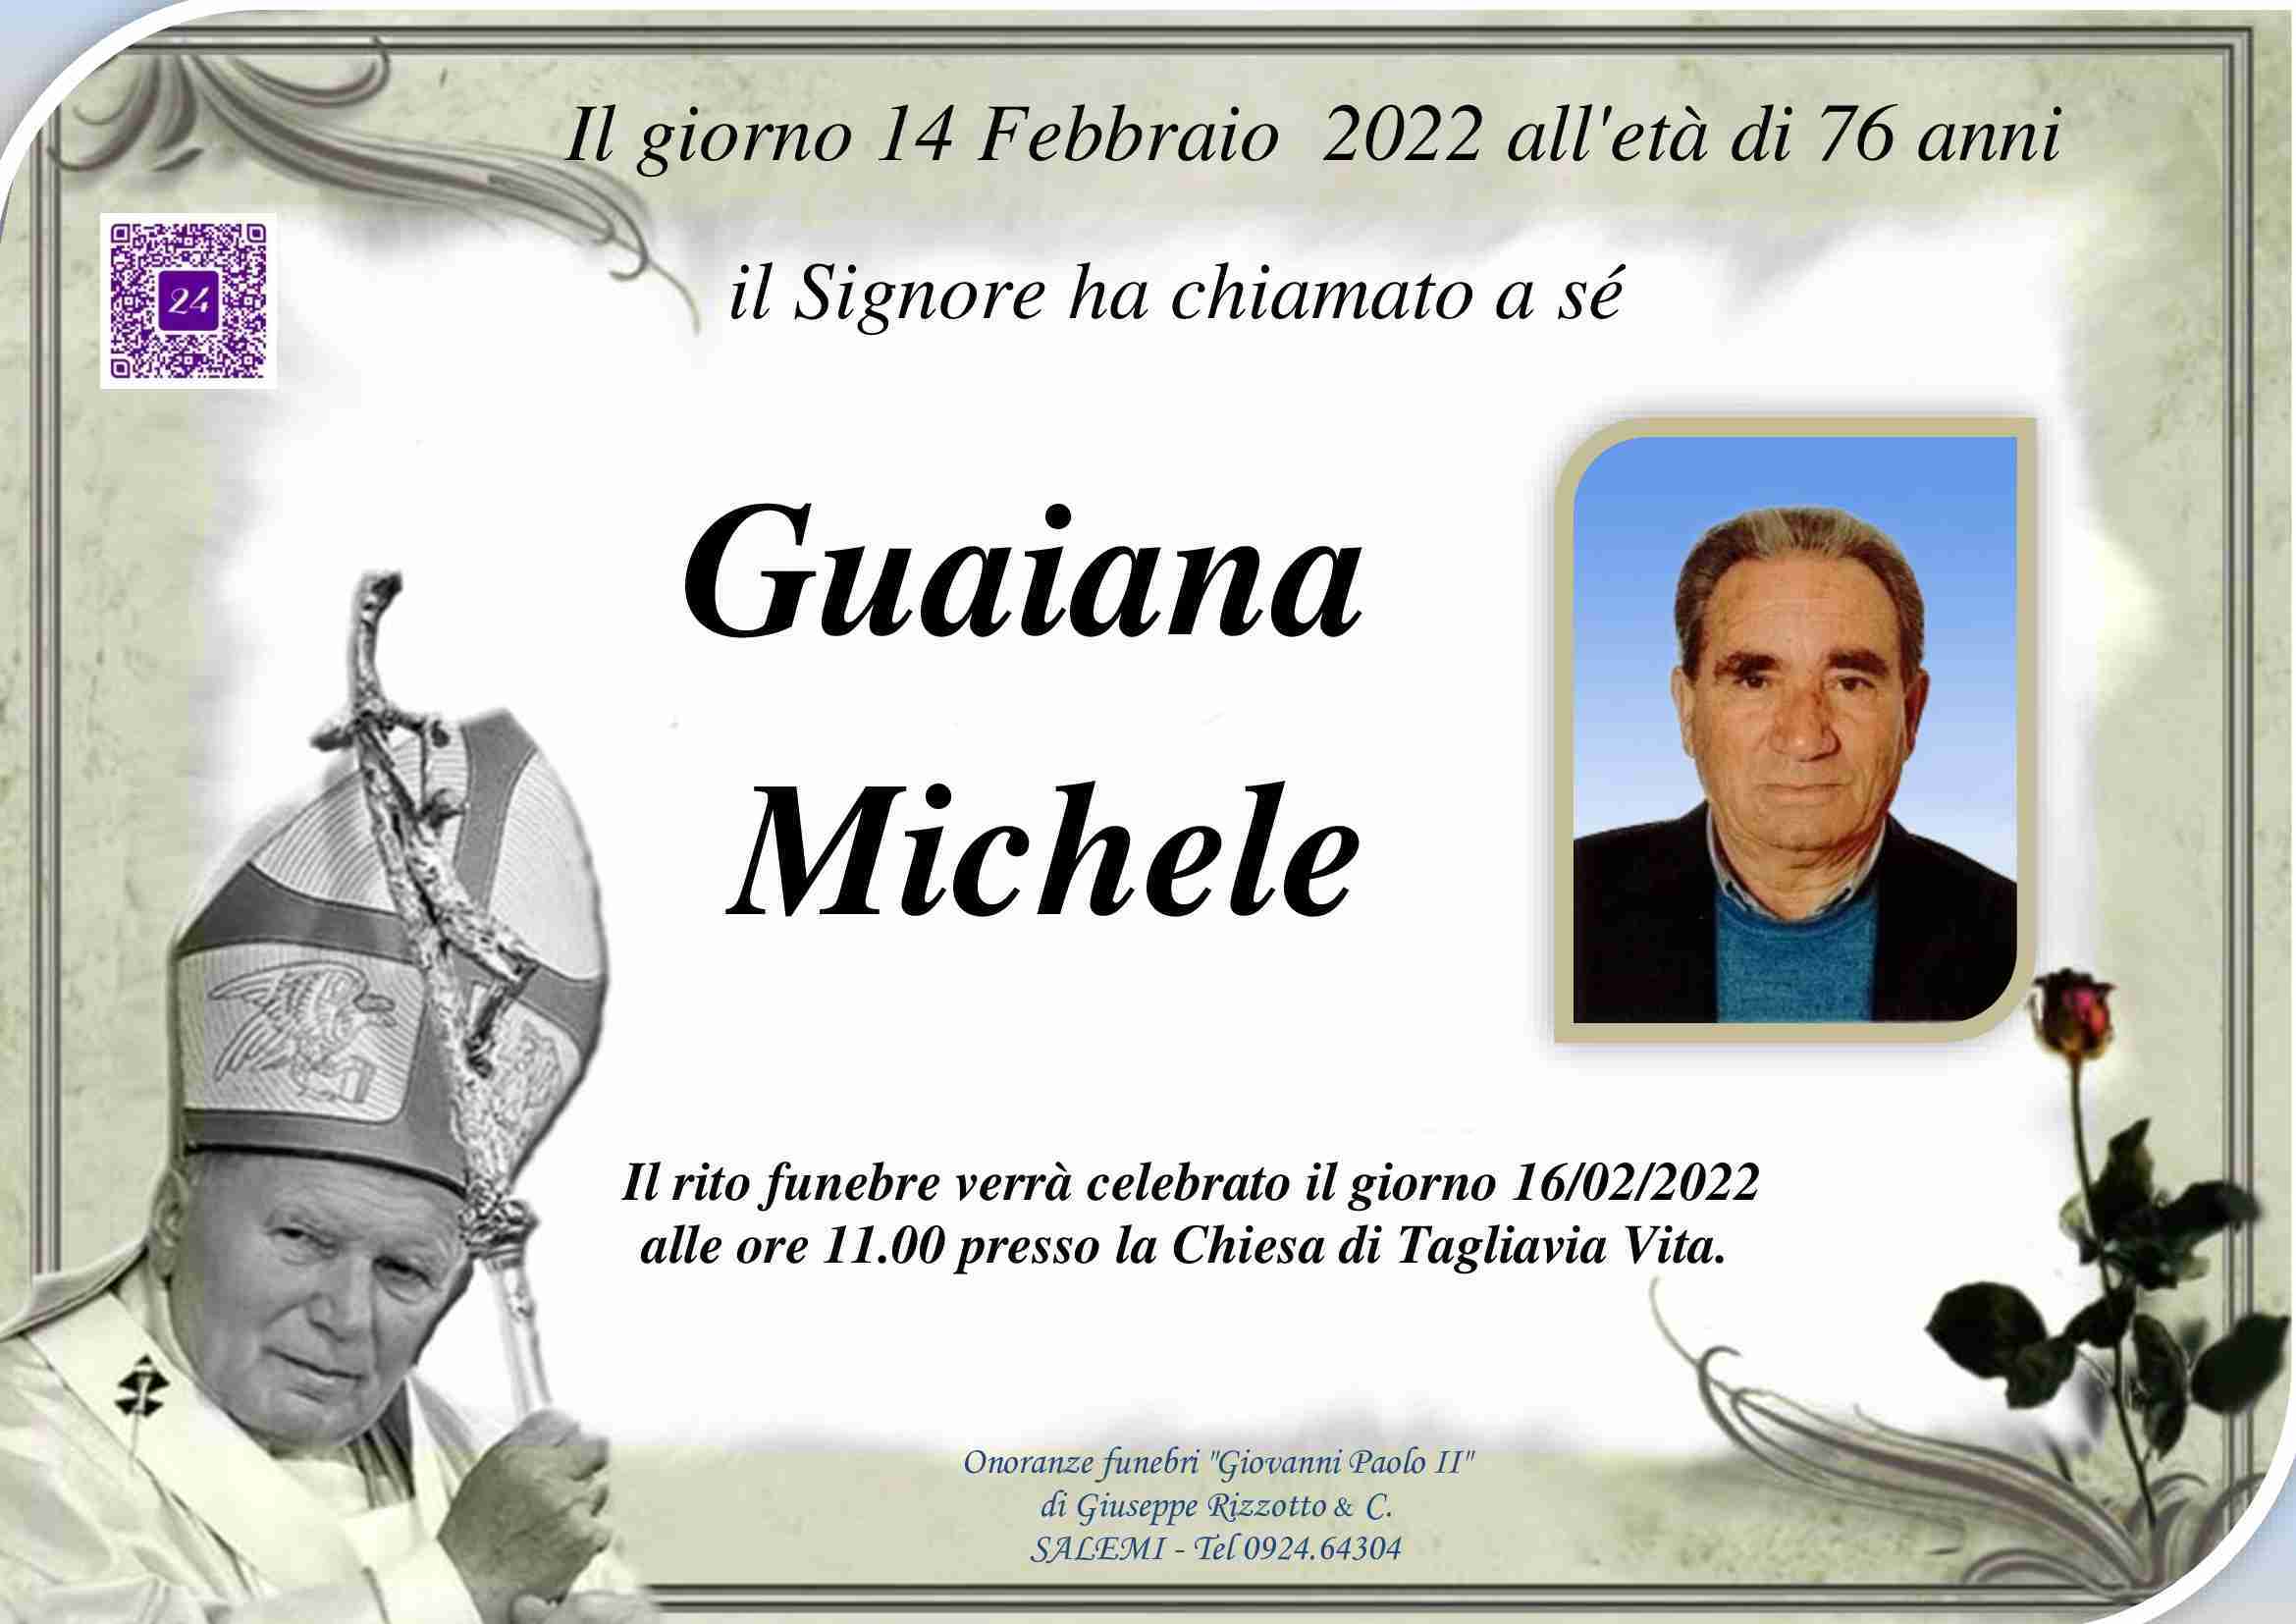 Michele Guaiana